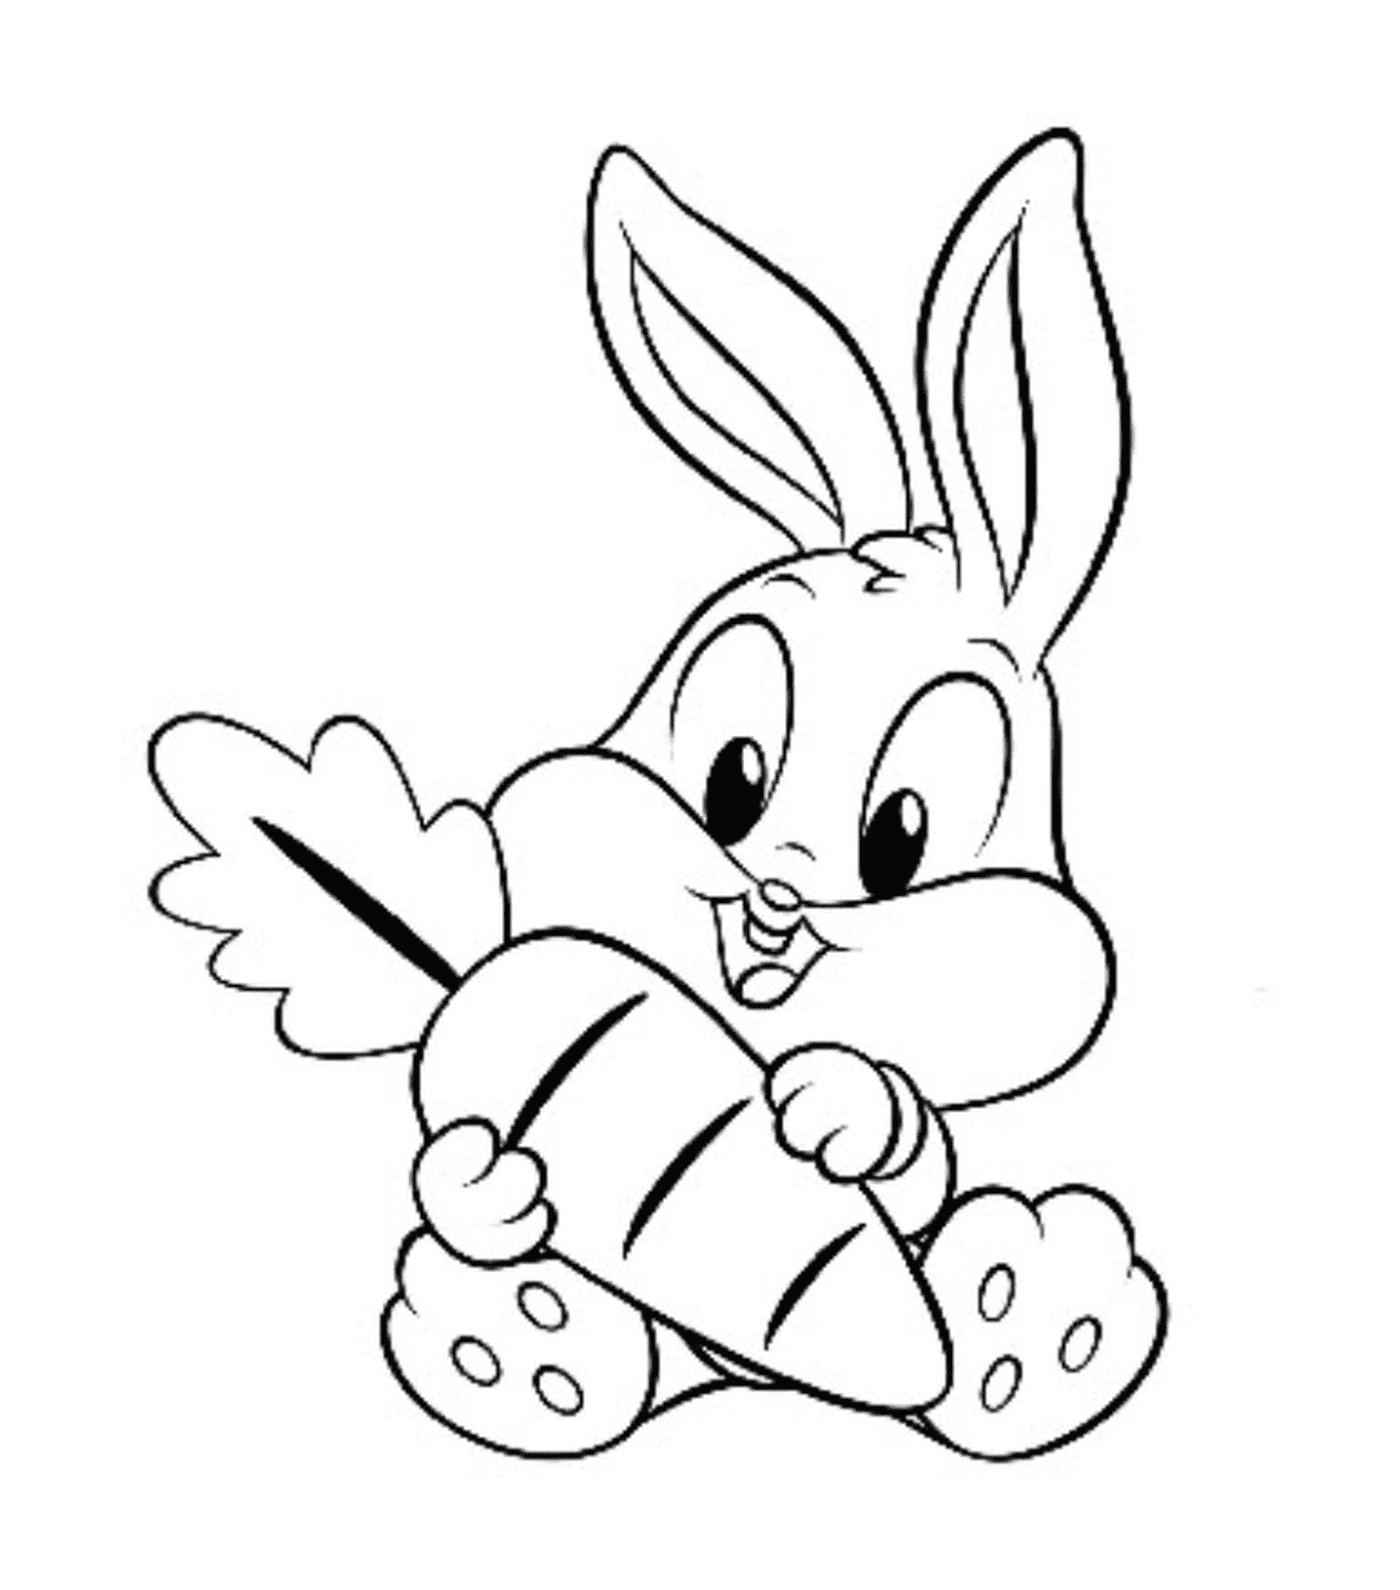  一只兔子在嘴里拿着大胡萝萝卜 